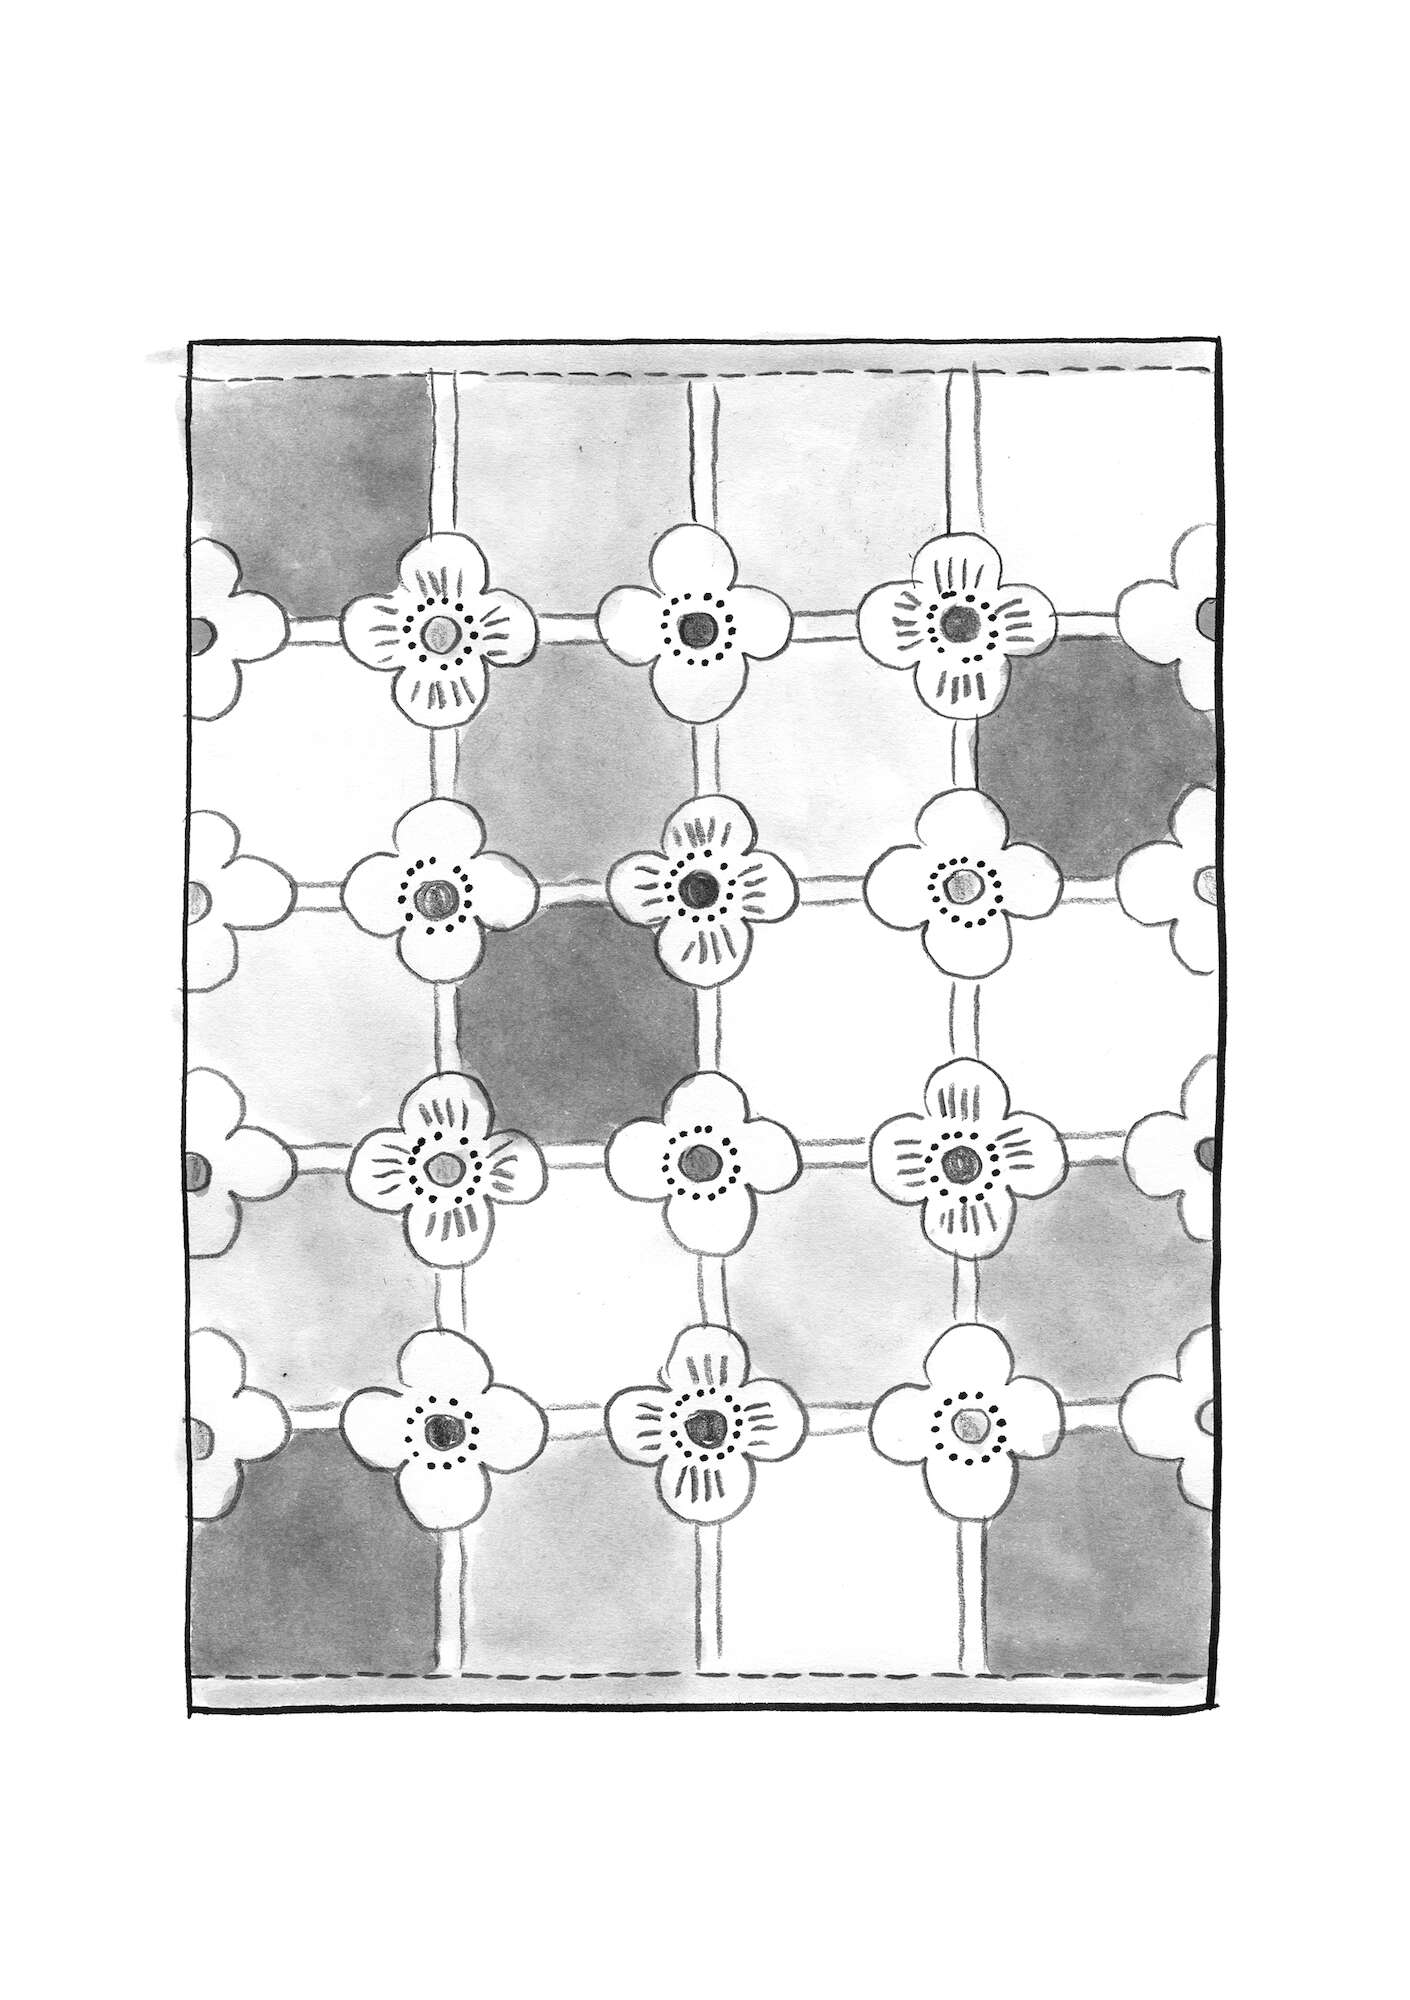  Jacquardgeweven vloerkleed  Tiles  van biologisch katoen lijsterbes